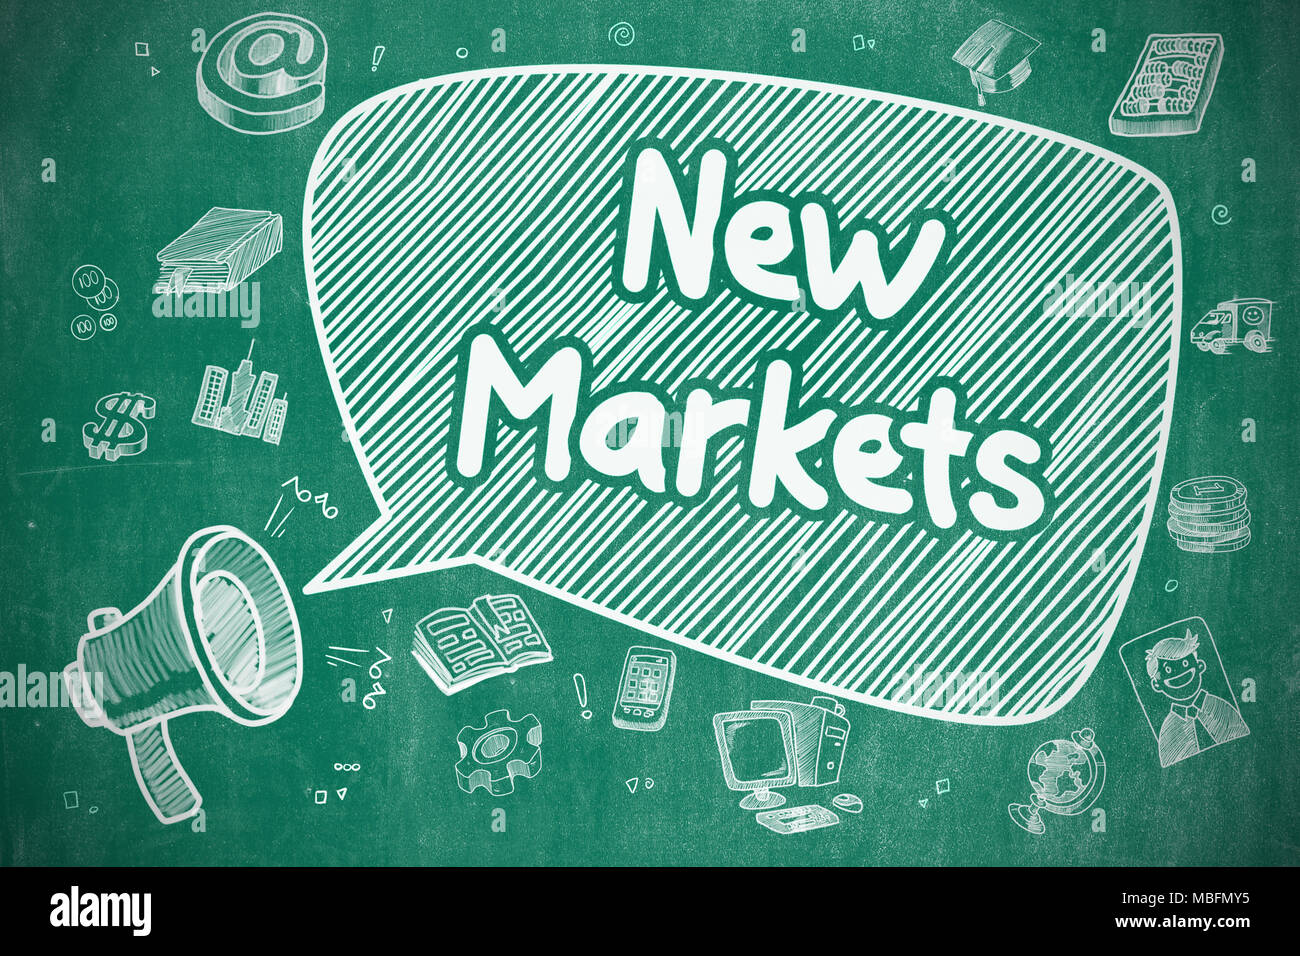 Nuevos mercados - Doodle ilustración en color azul pizarra. Foto de stock